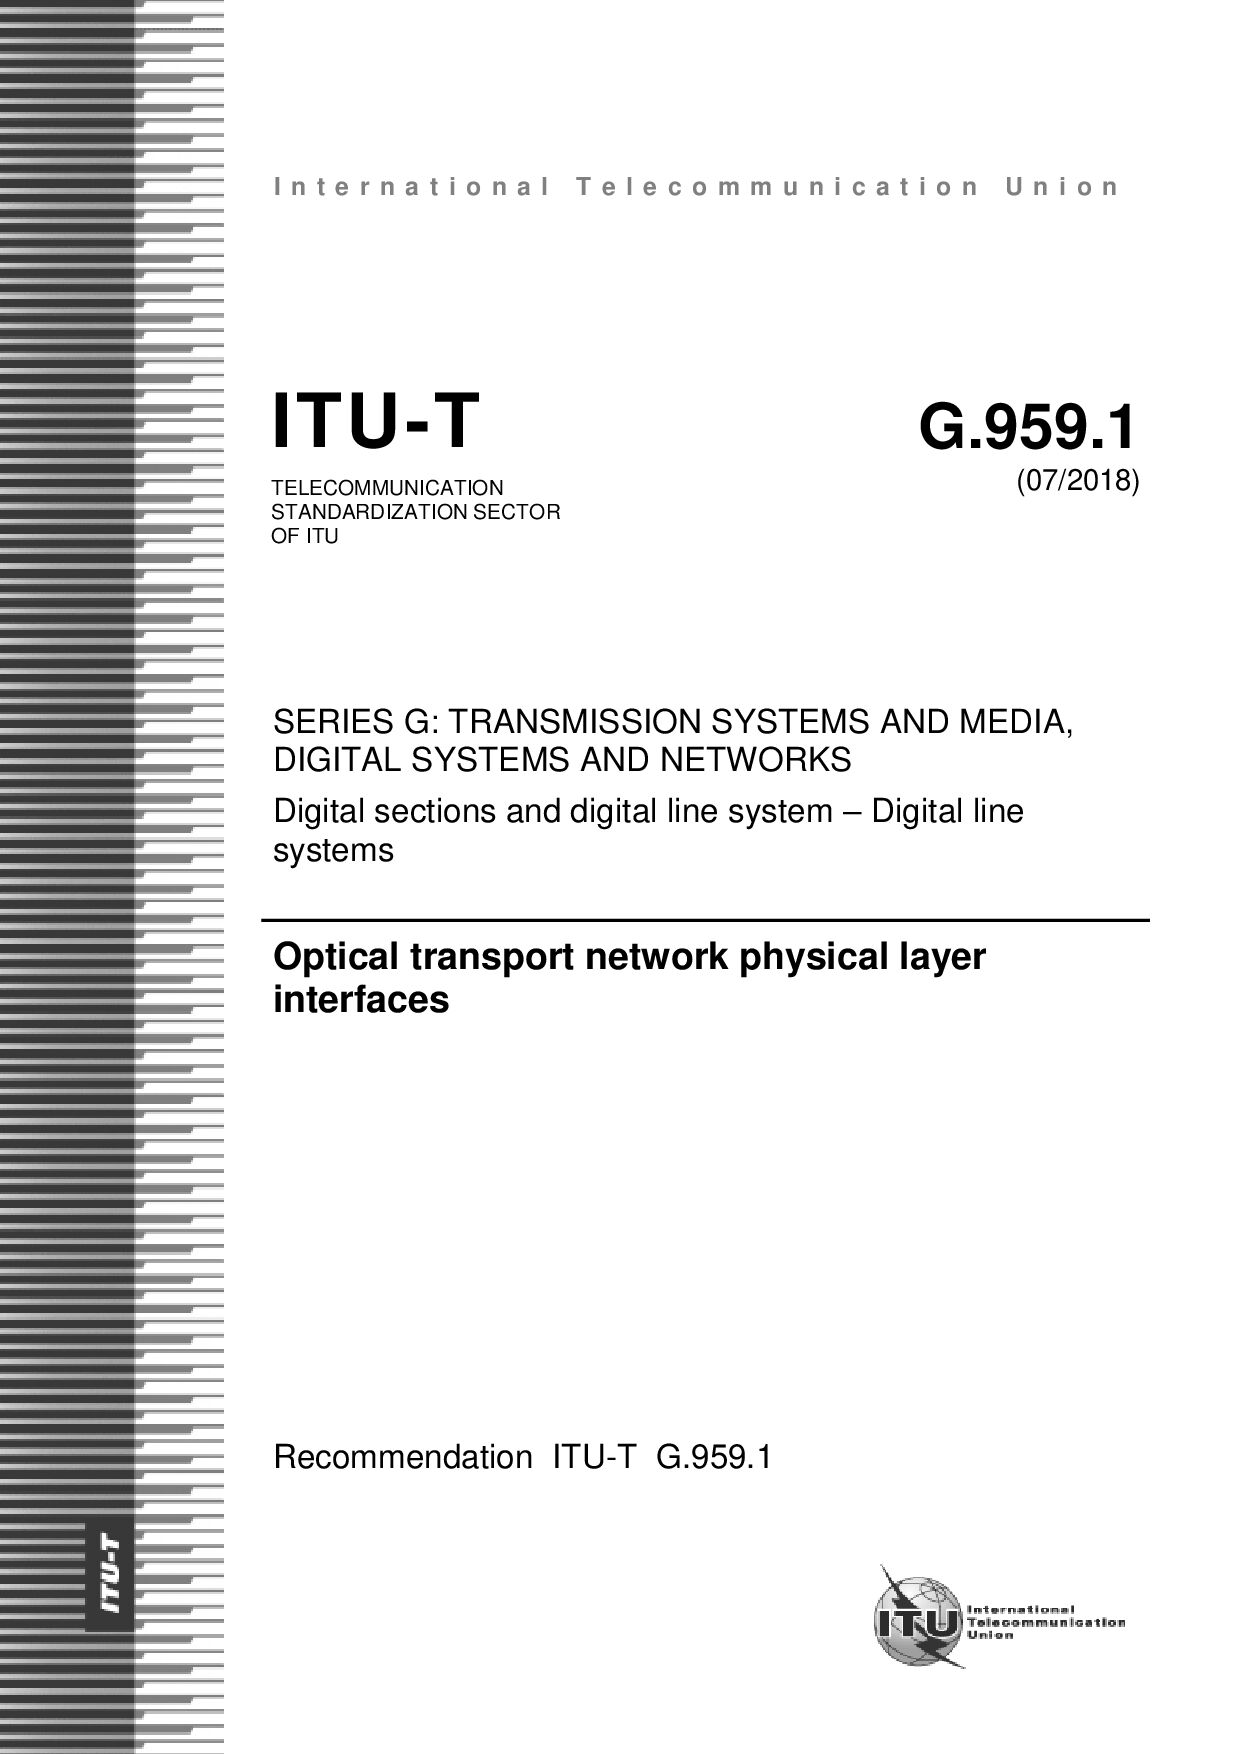 ITU-T G.959.1-2018